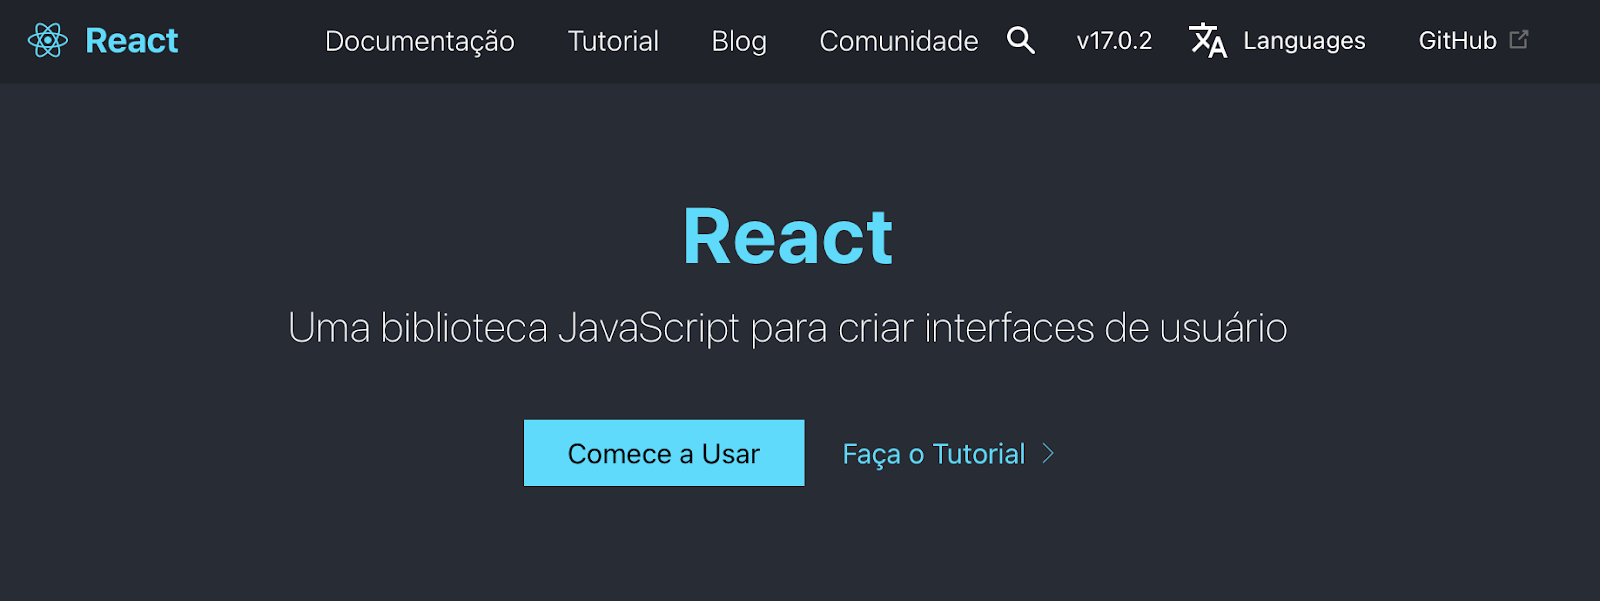 página inicial do reactJS